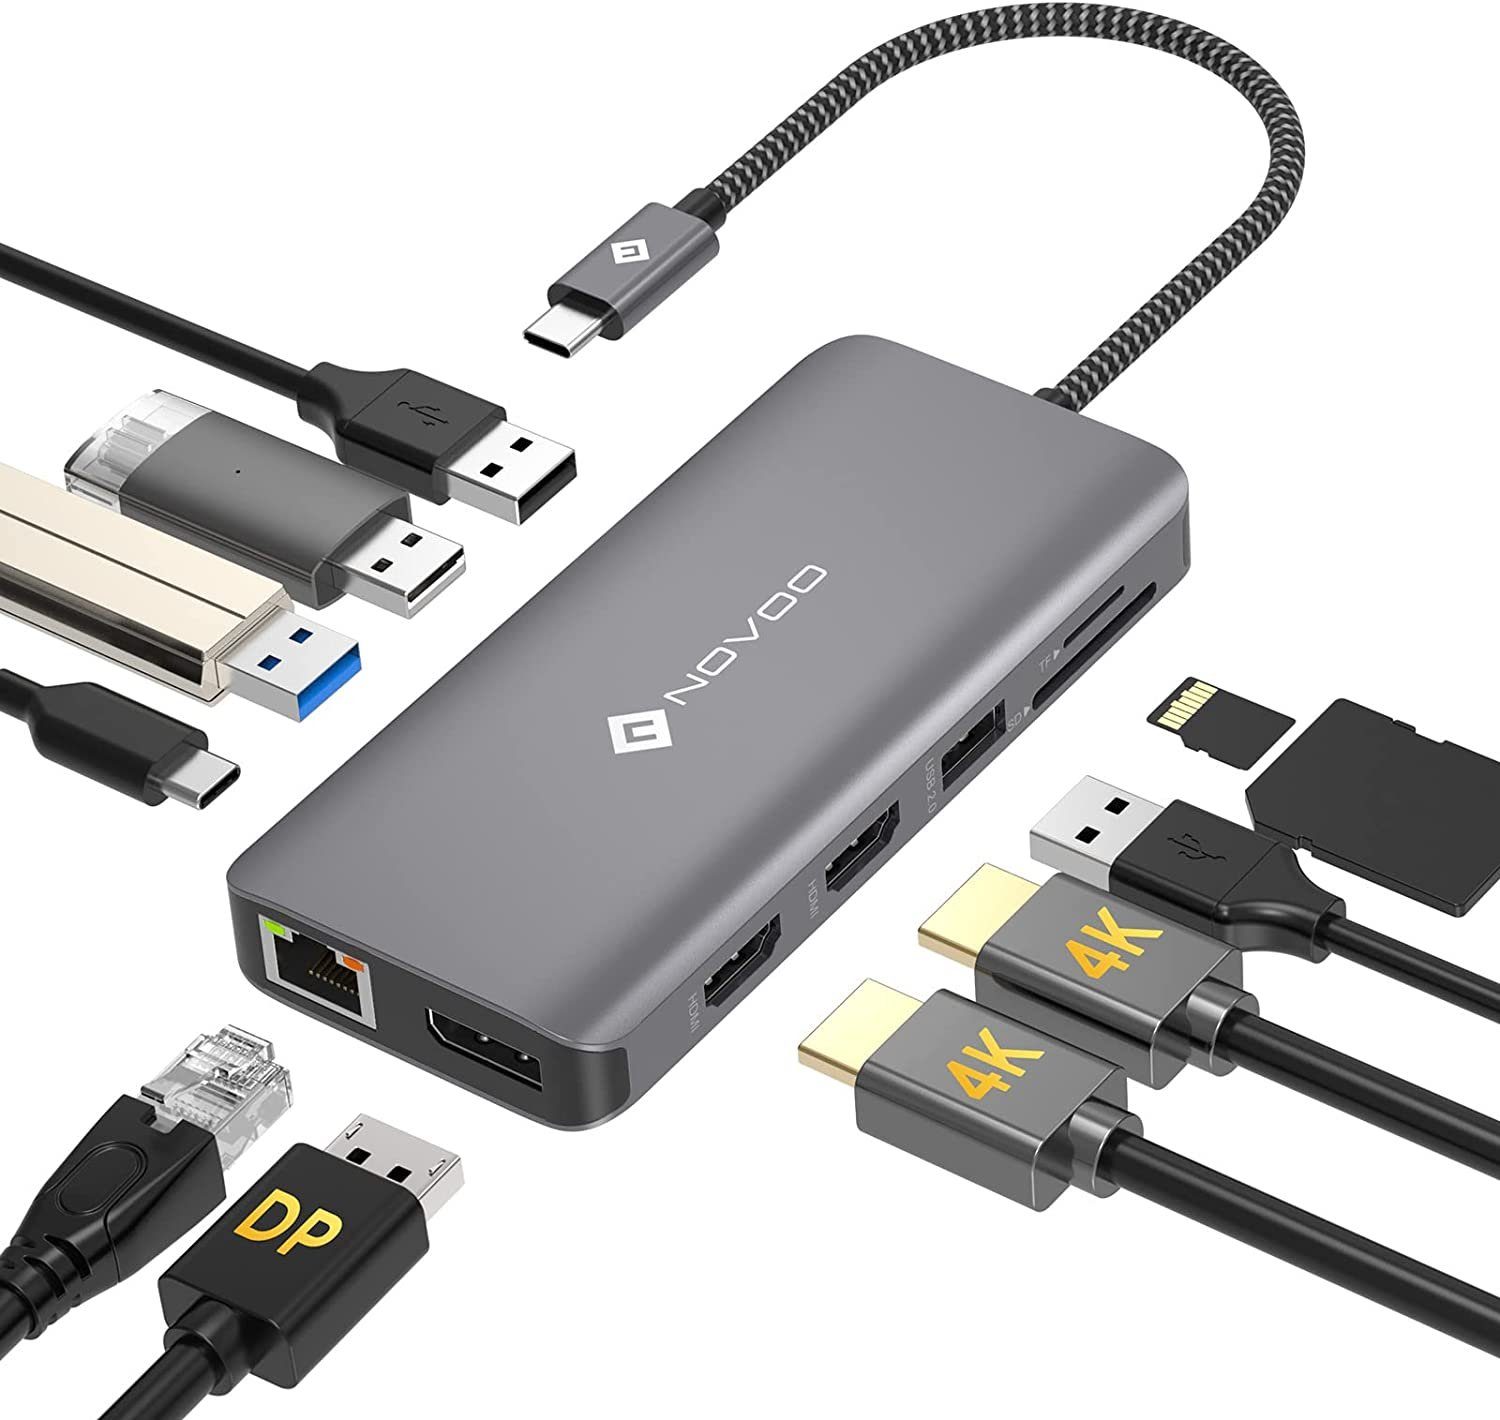 NOVOO 11 in 1 Adapter für technische Geräte, Anschlusserweiterung für den  PC USB-Adapter USB-C zu USB 3.0 Typ A, SD & TF Kartenleser, HDMI für 4K,  LAN, USB-C PD, Kompatibel mit Windows